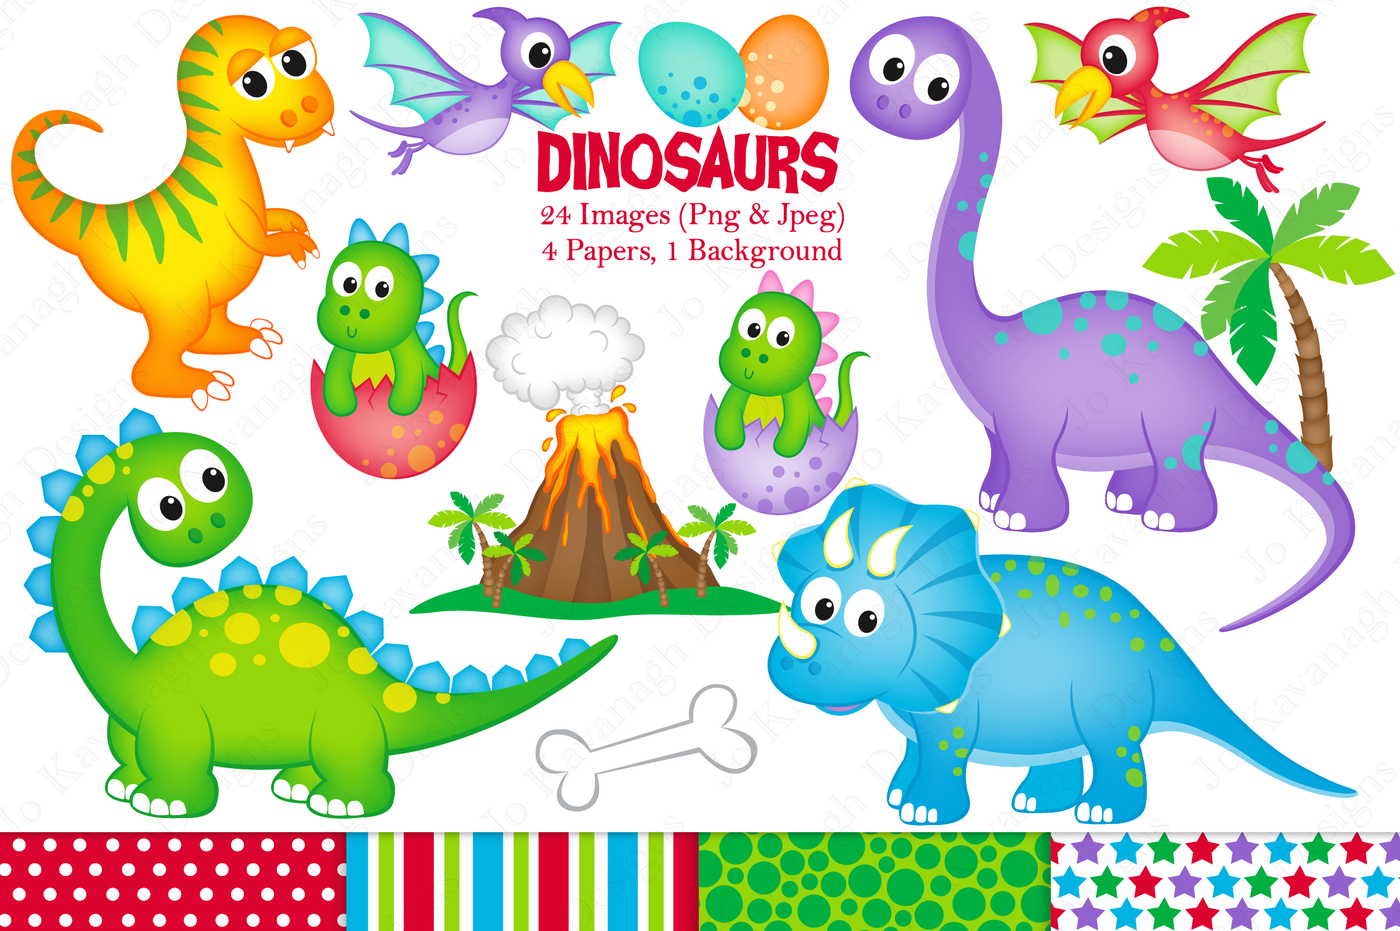 Dinosaur clipart, Dinosaur graphics & illustrations, Cute dinosaurs By